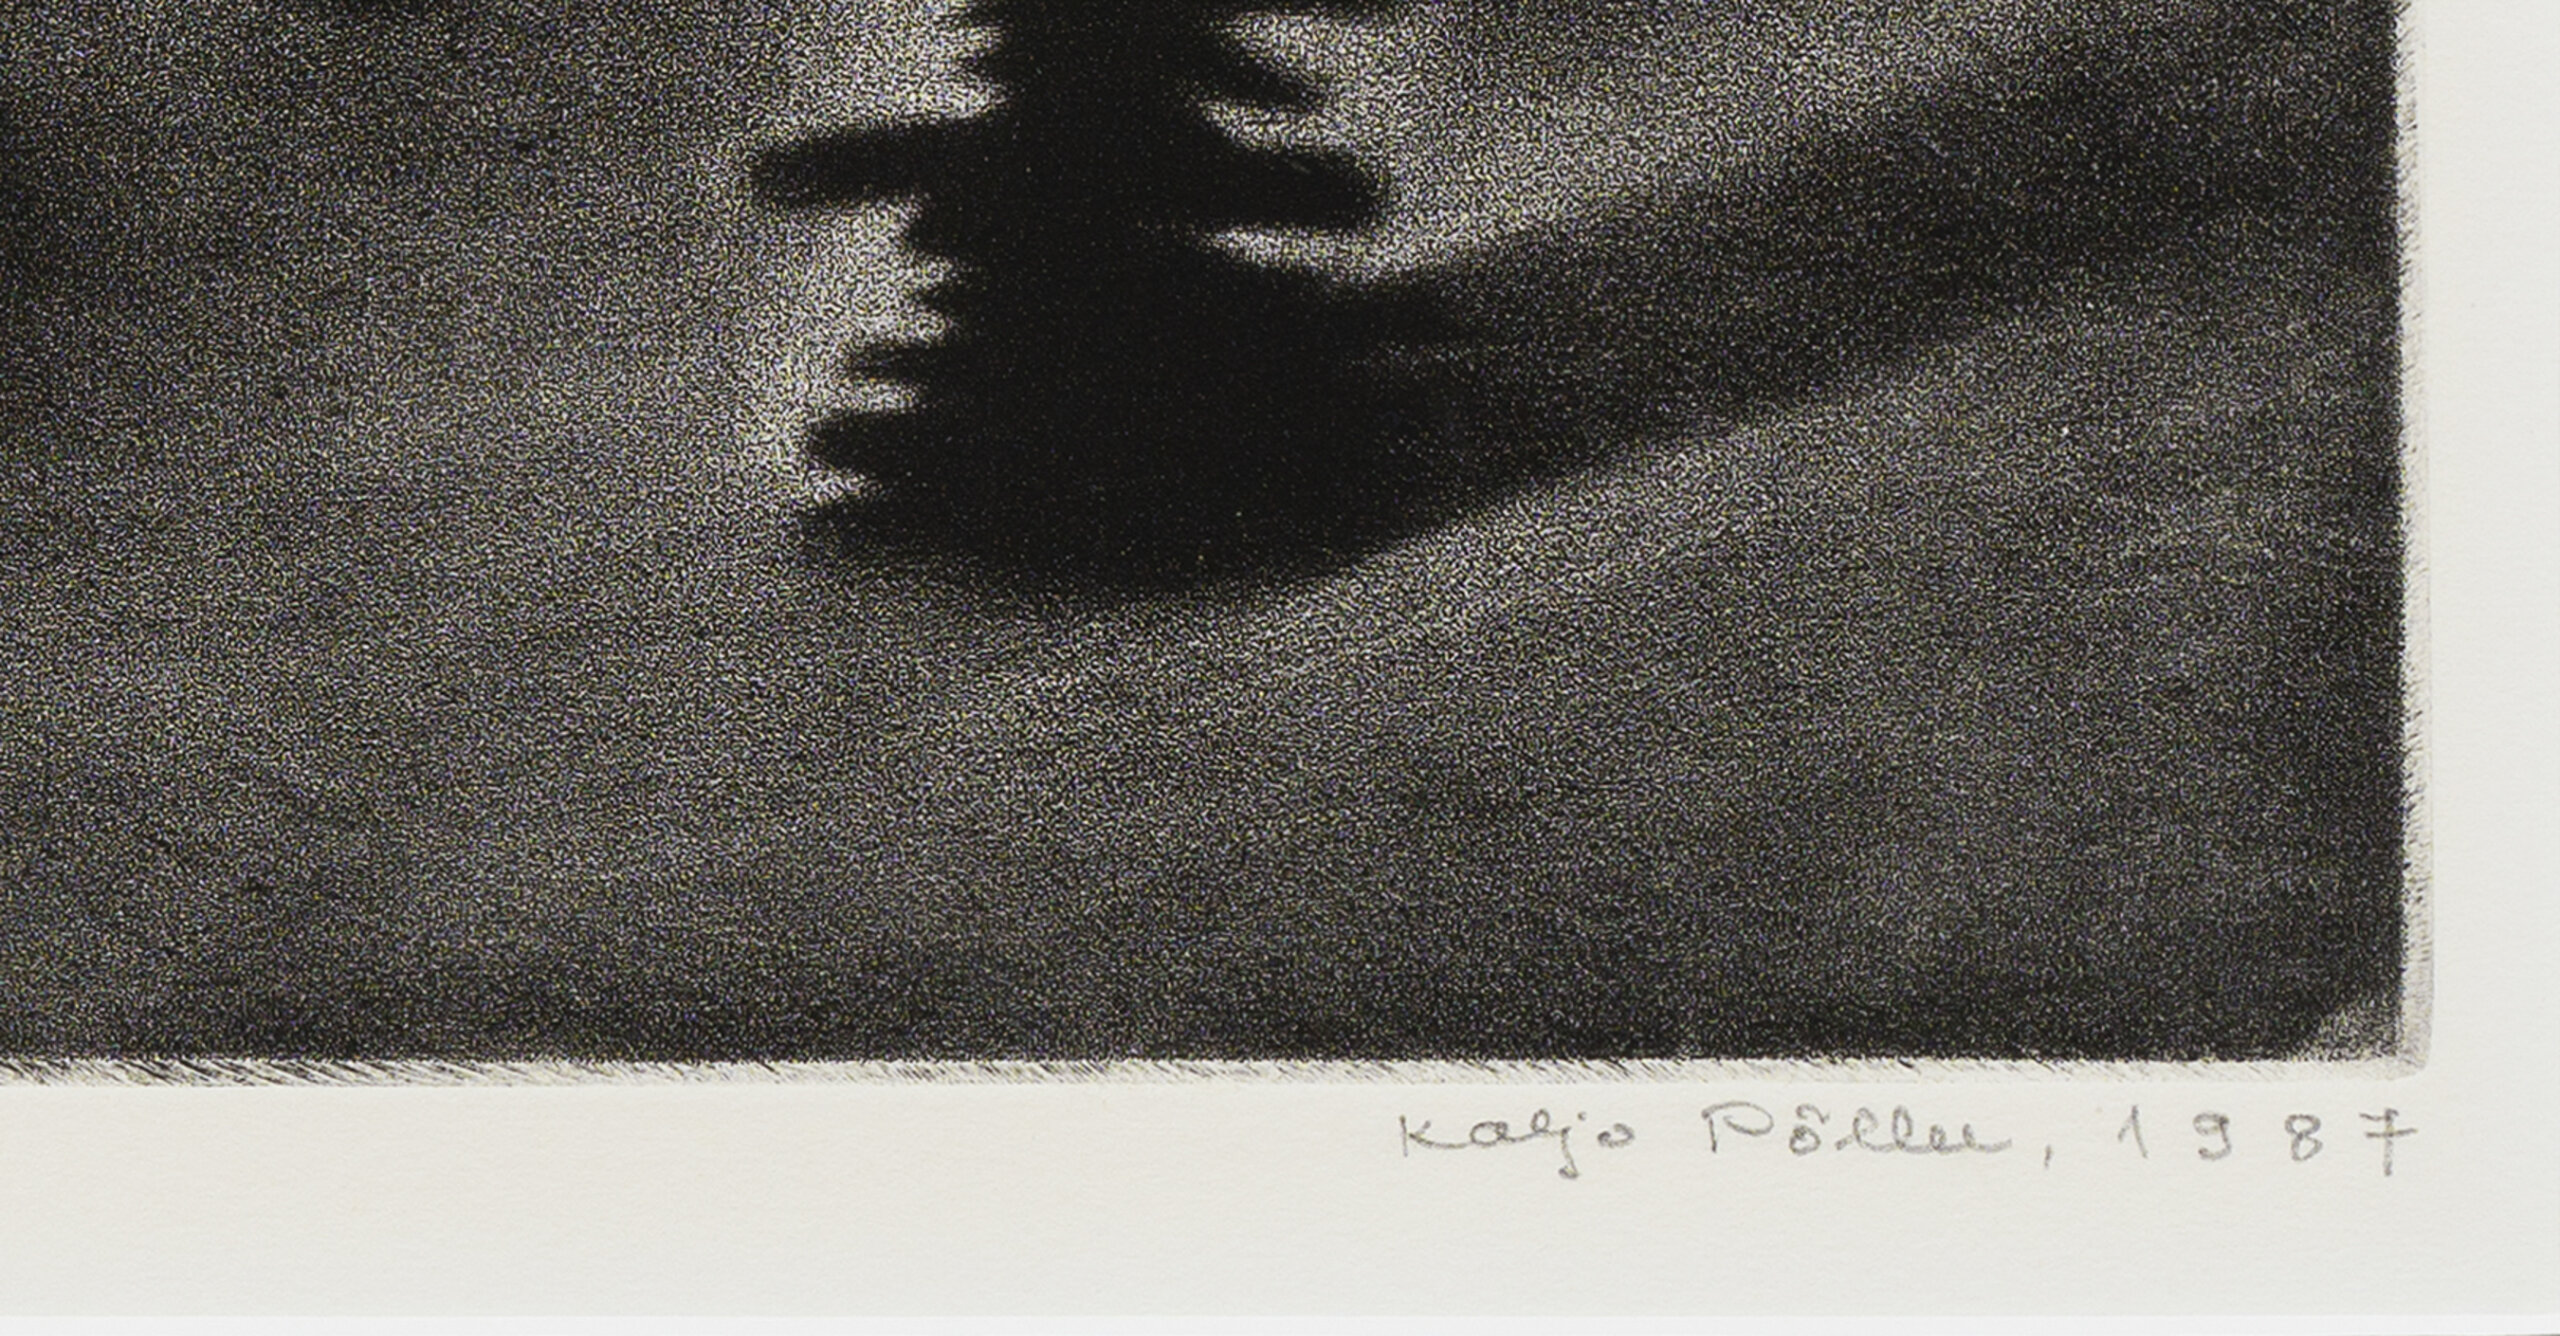 Kaljo Põllu “Saatus”, 1987. Plm 48 x 61,2 cm